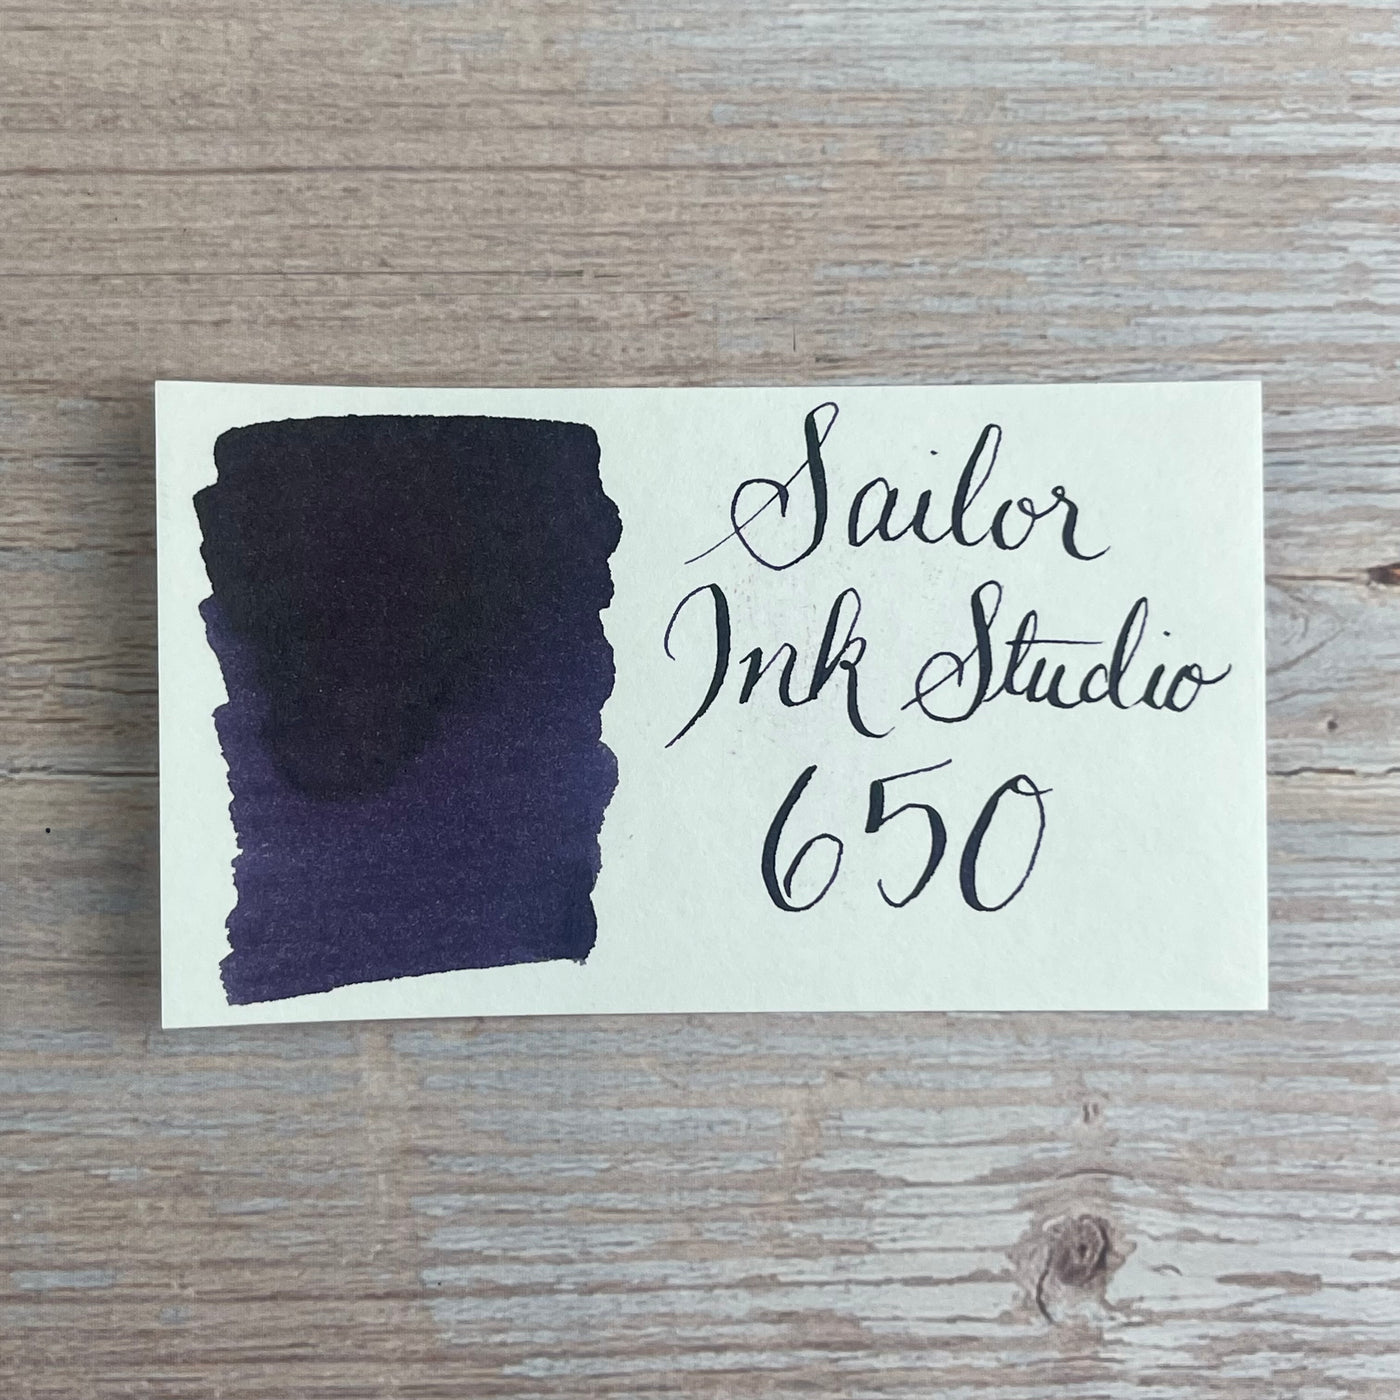 Sailor Ink Studio 20ml Bottled Ink - 650